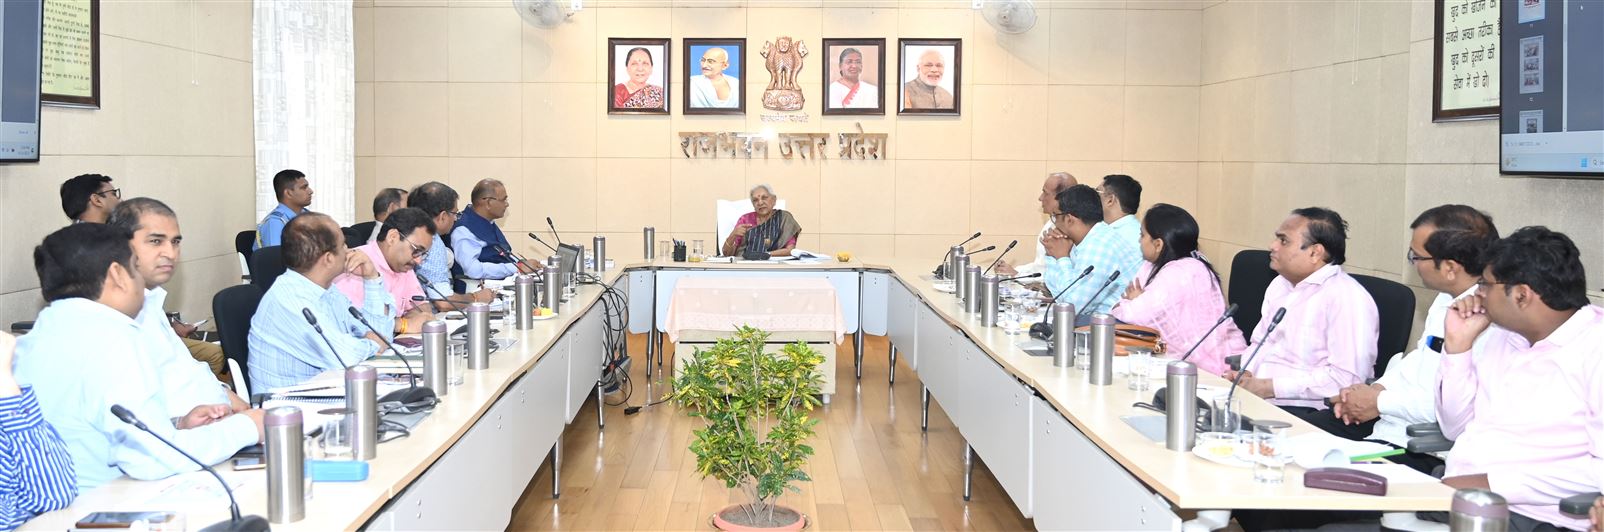 The Governor reviewed SSR prepared for NAAC grading of Chhatrapati Shahu Ji Maharaj University Kanpur/राज्यपाल ने छत्रपति शाहू जी महाराज विश्वविद्यालय, कानपुर की नैक ग्रेडिंग हेतु तैयार एस0एस0आर0 की समीक्षा की